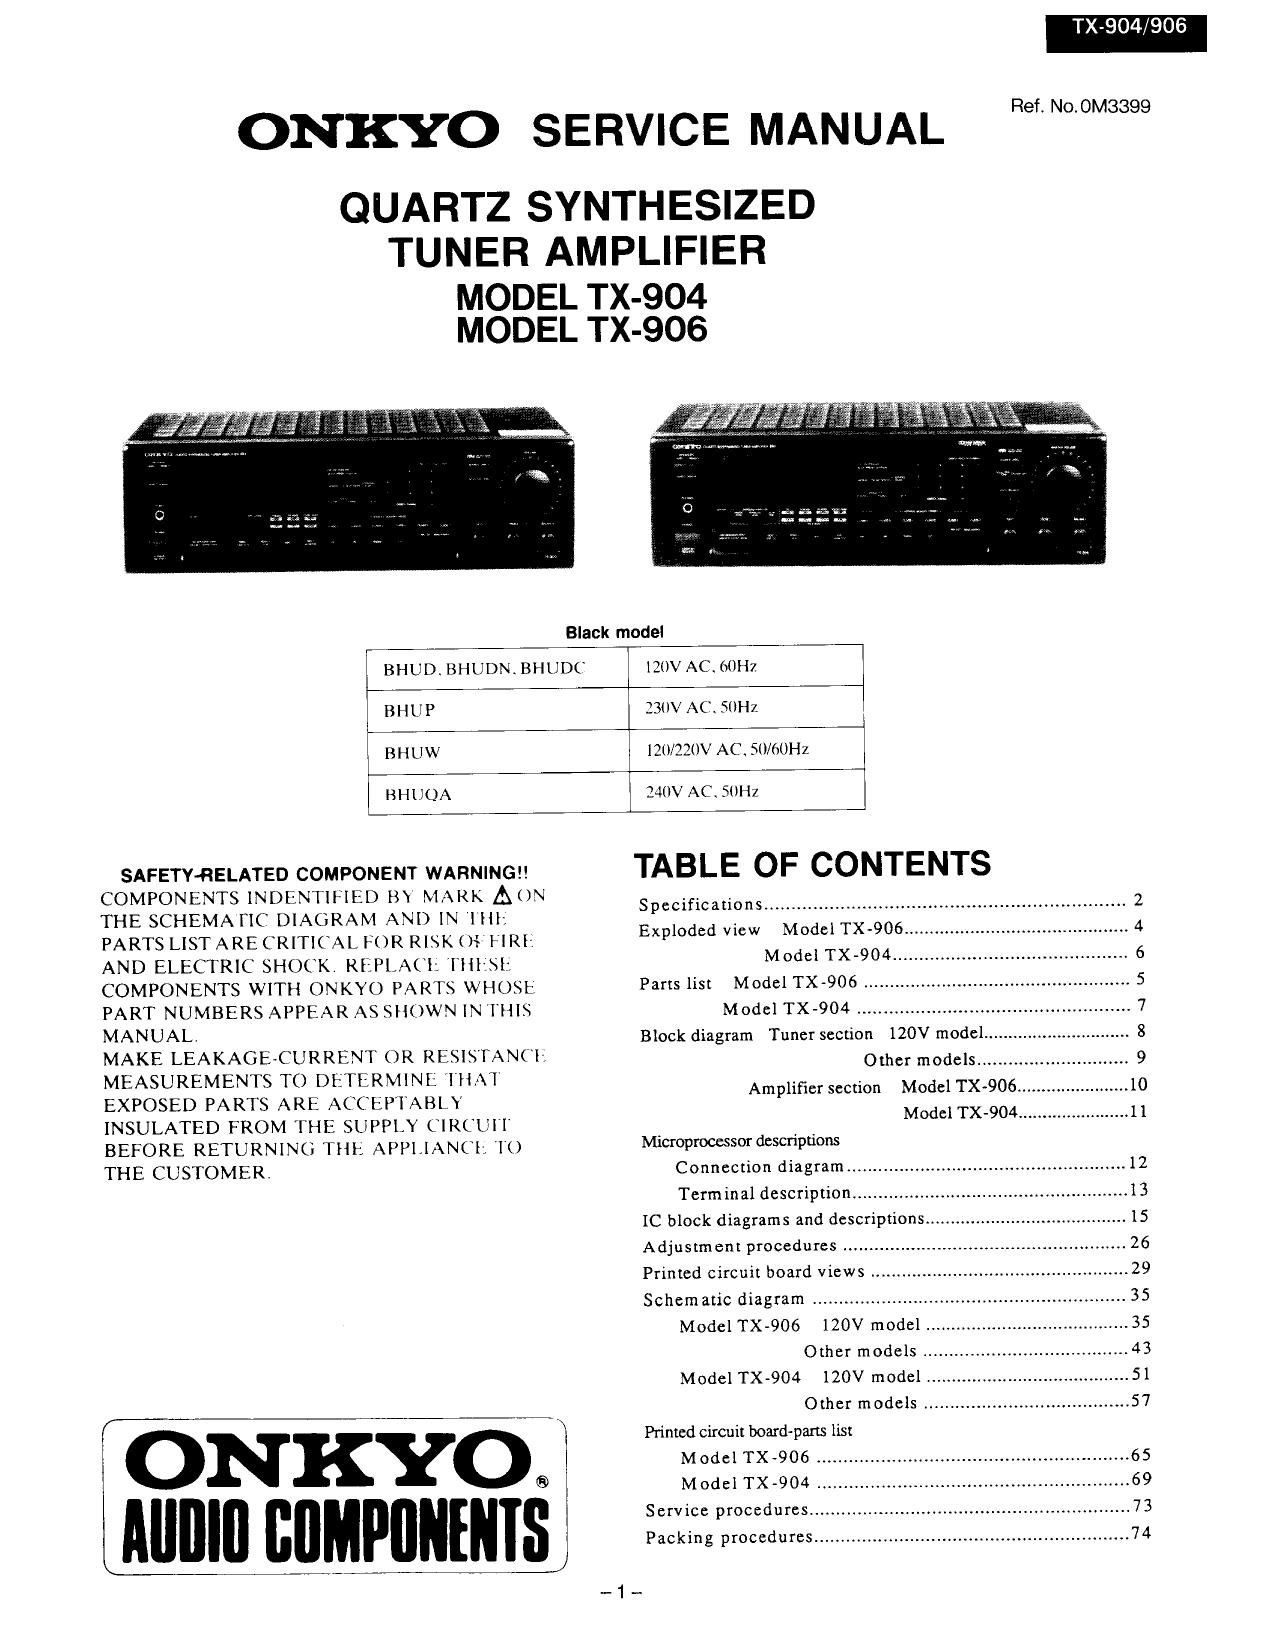 Onkyo TX 904 Service Manual